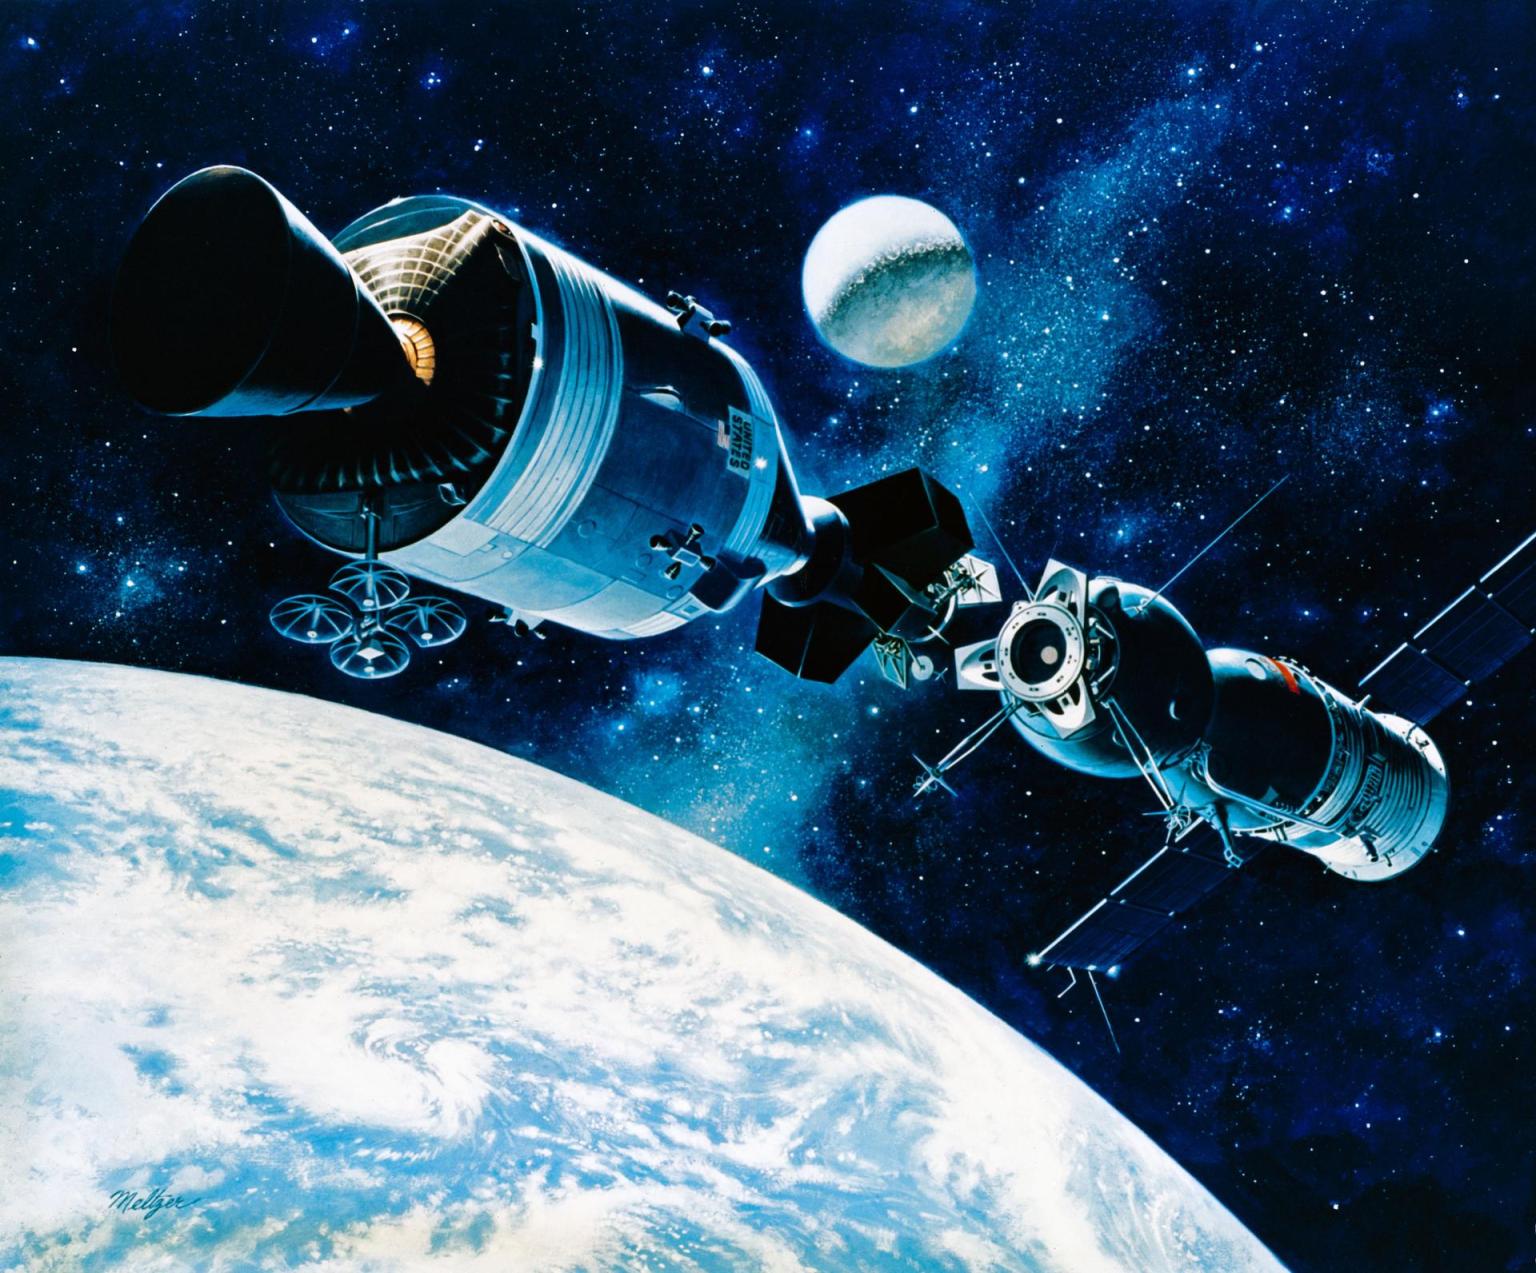 Apollo-Soyuz artwork